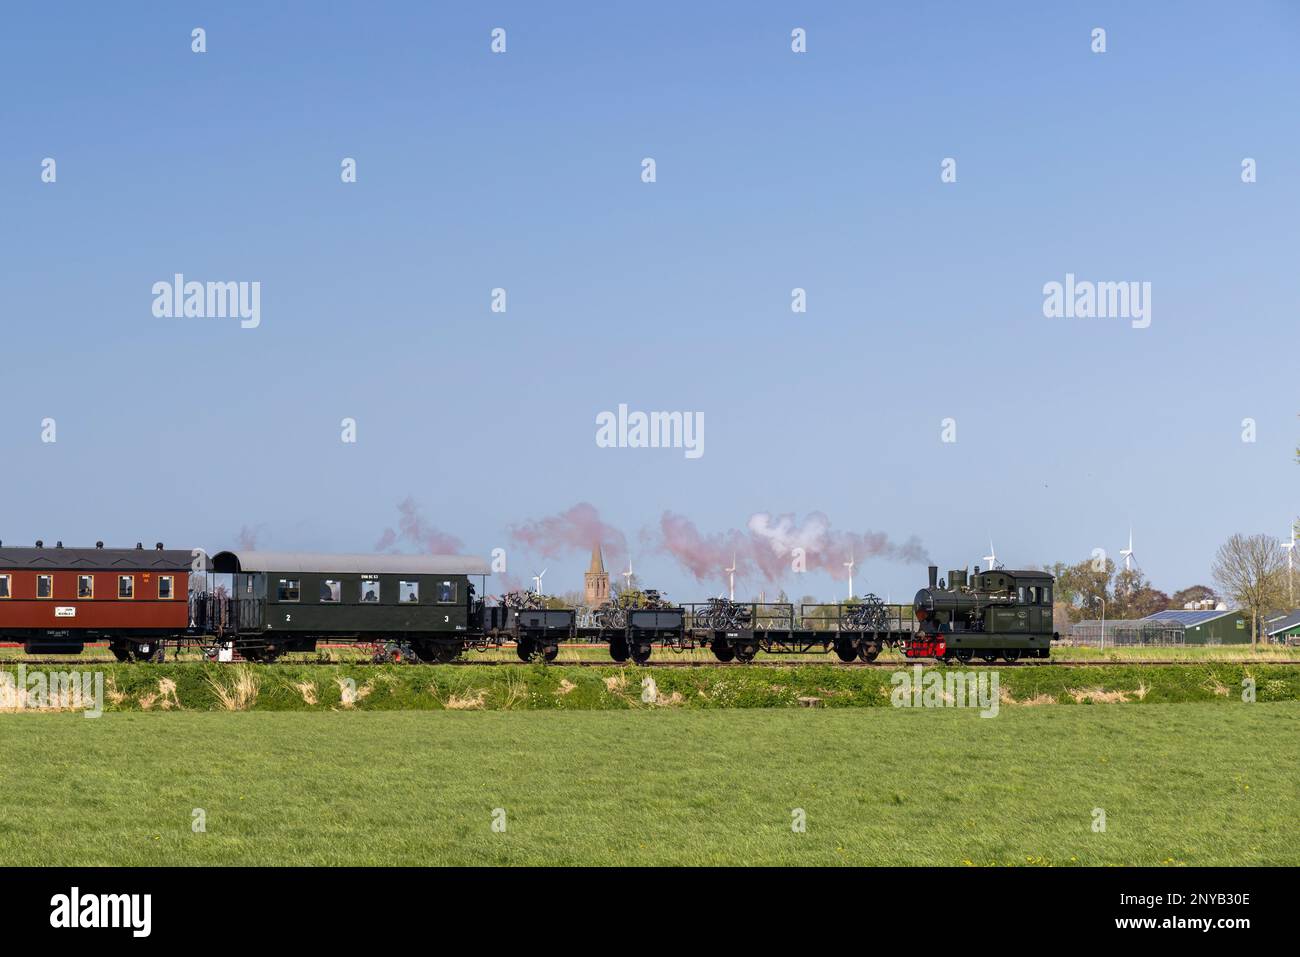 Dampflokomotive, Hoorn - Medemblik, Noord Holland, Niederlande. Stockfoto